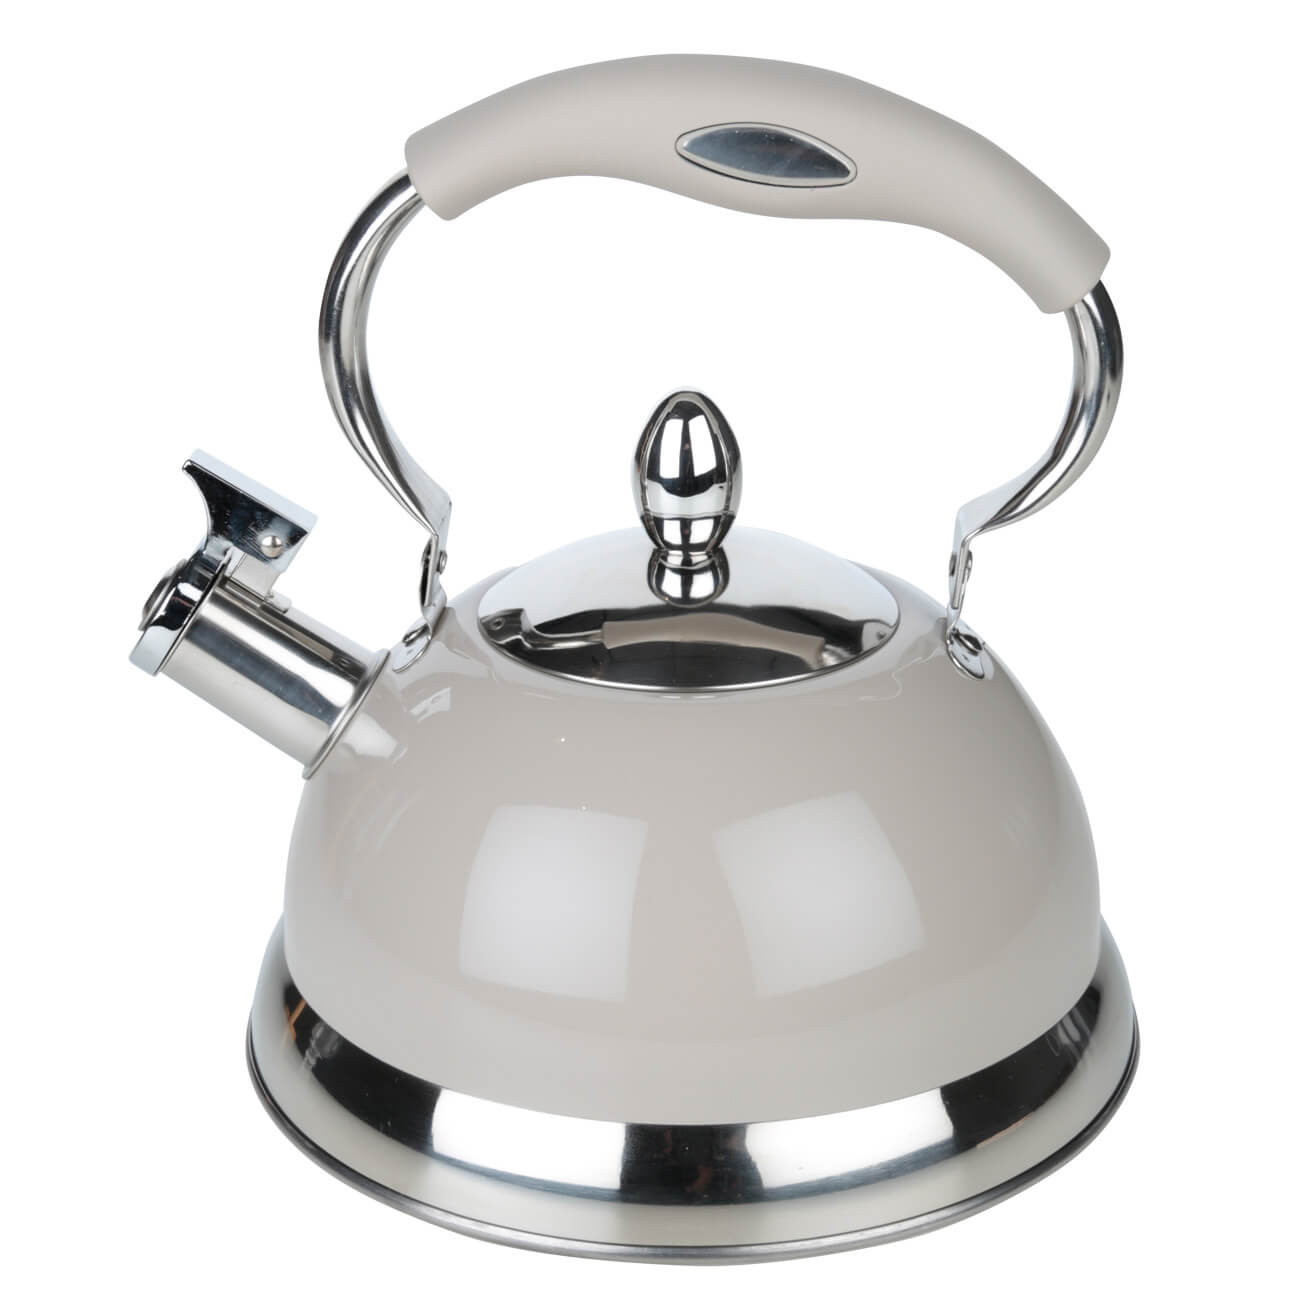 Чайник, 2,7 л, cо свистком, сталь, серый, Whistle чайник сталь эмалированное покрытие 2 2 л со свистком agness charm индукция 934 593